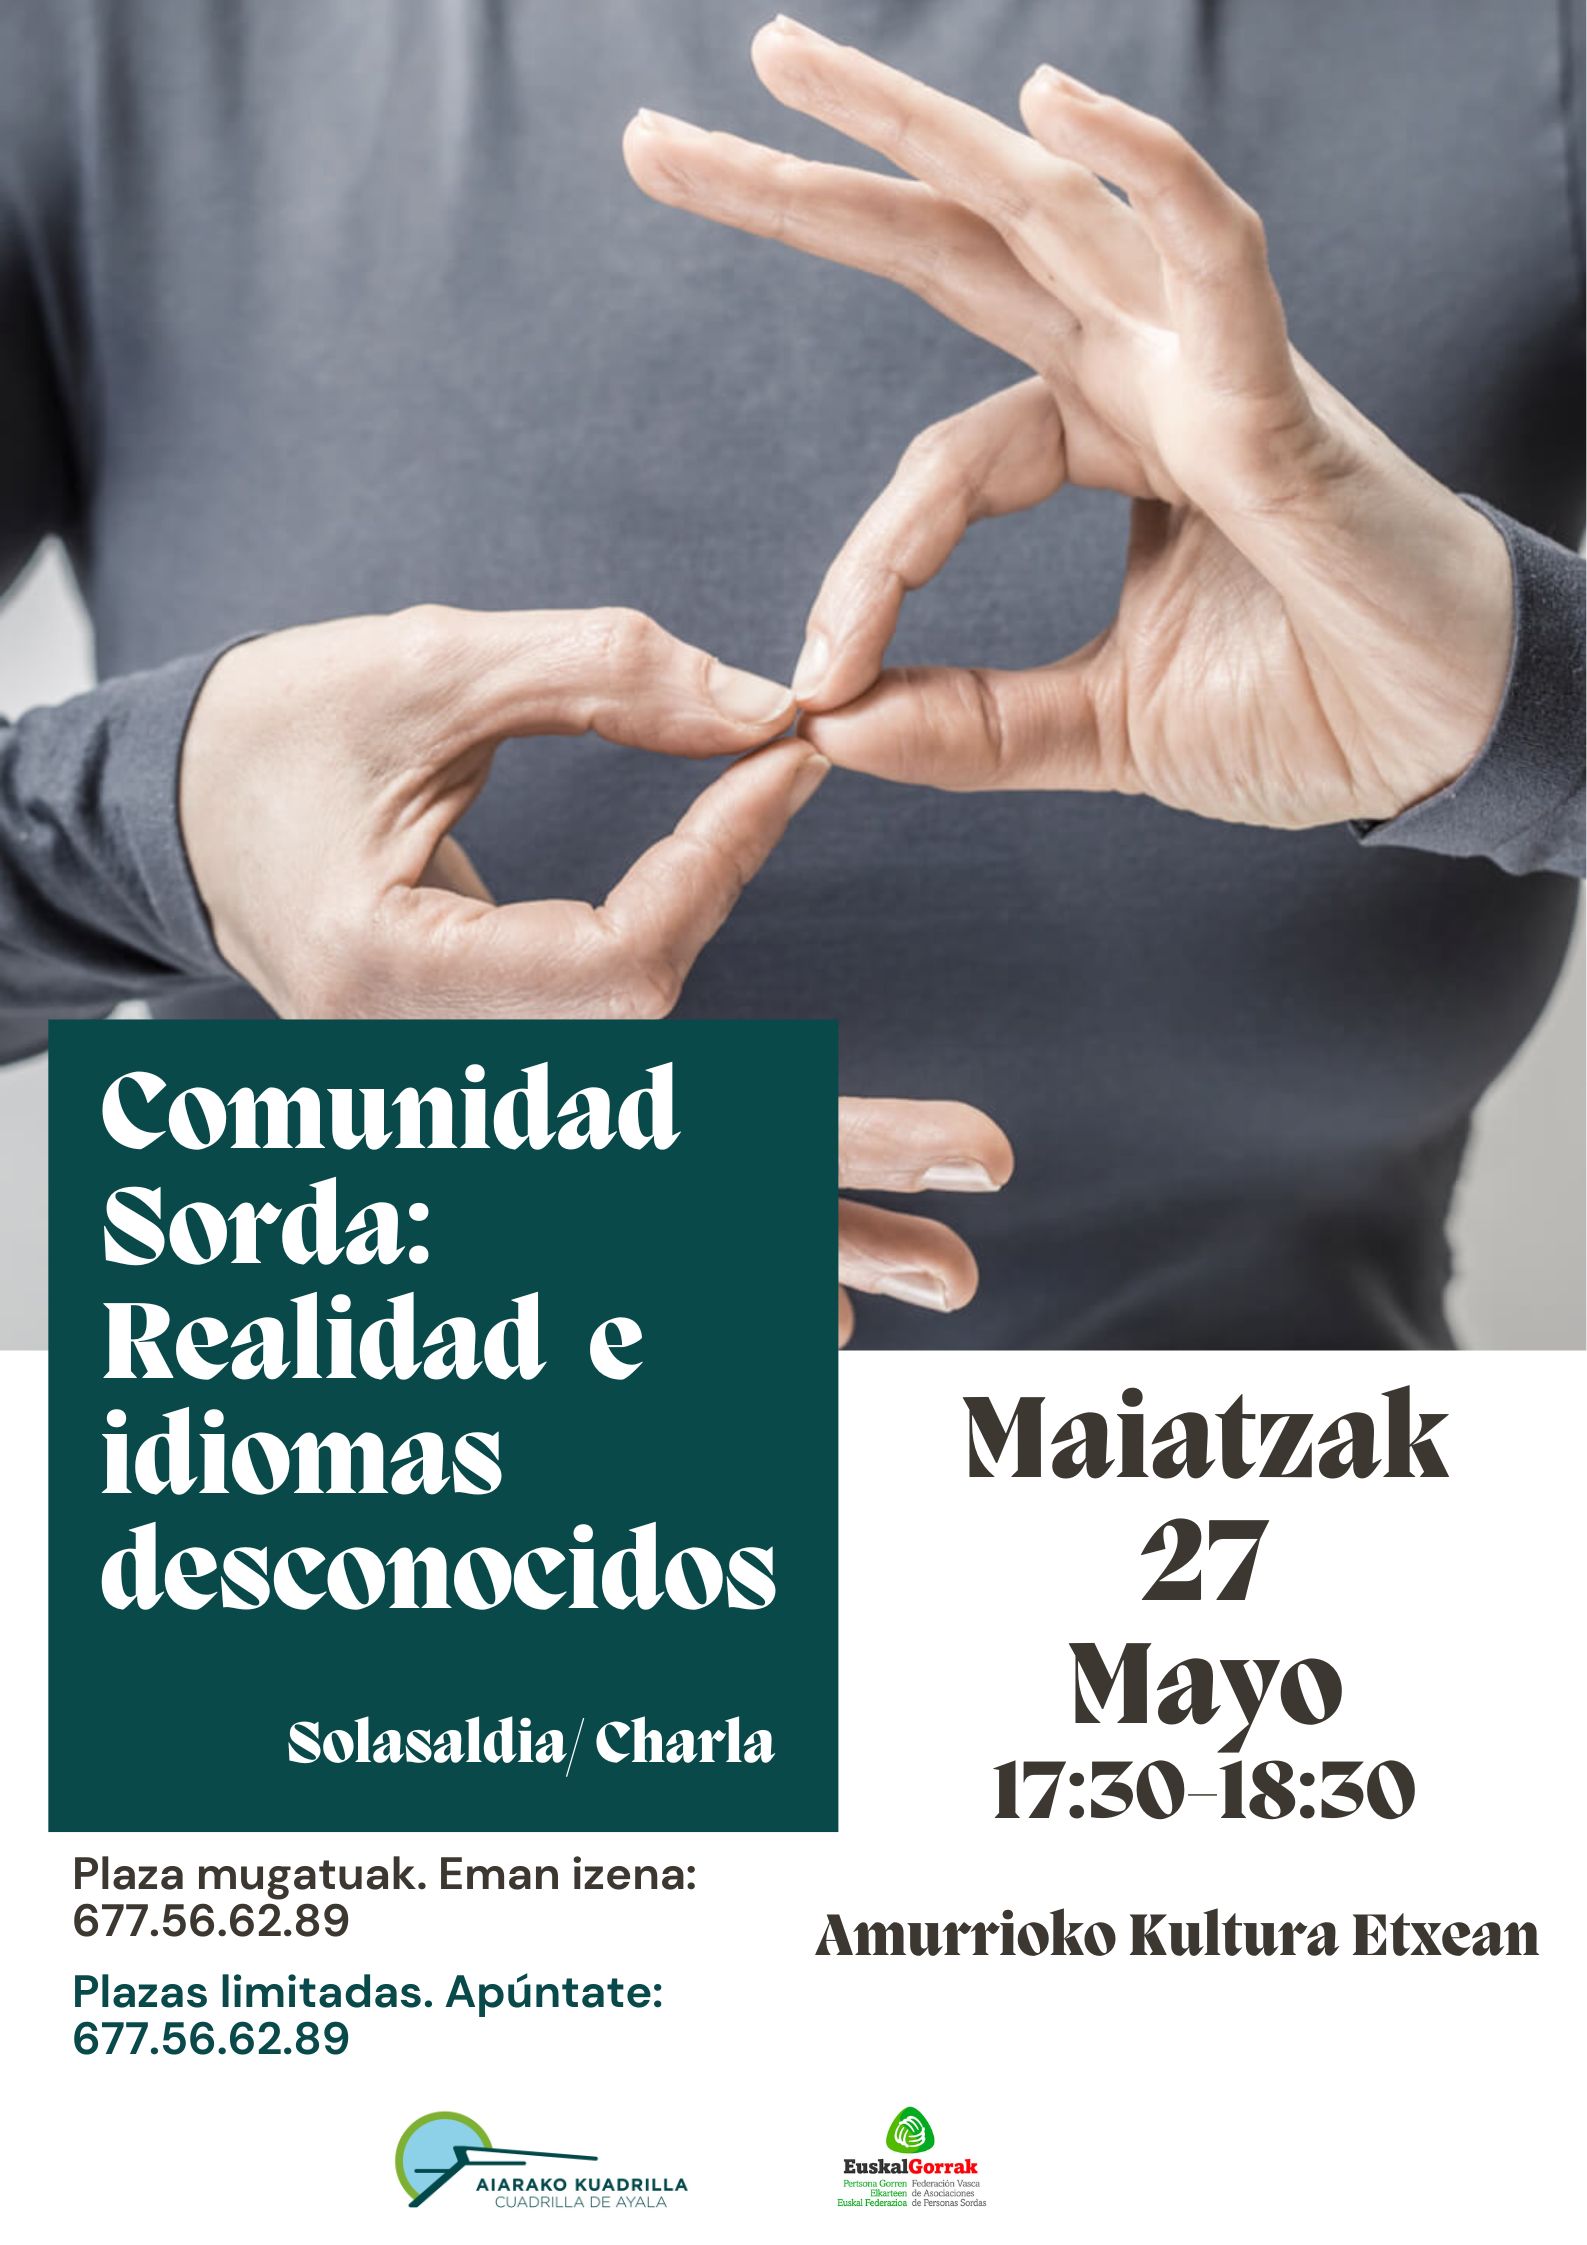 Solasaldia - Comunidad sorda: Realidad e idiomas desconocidos